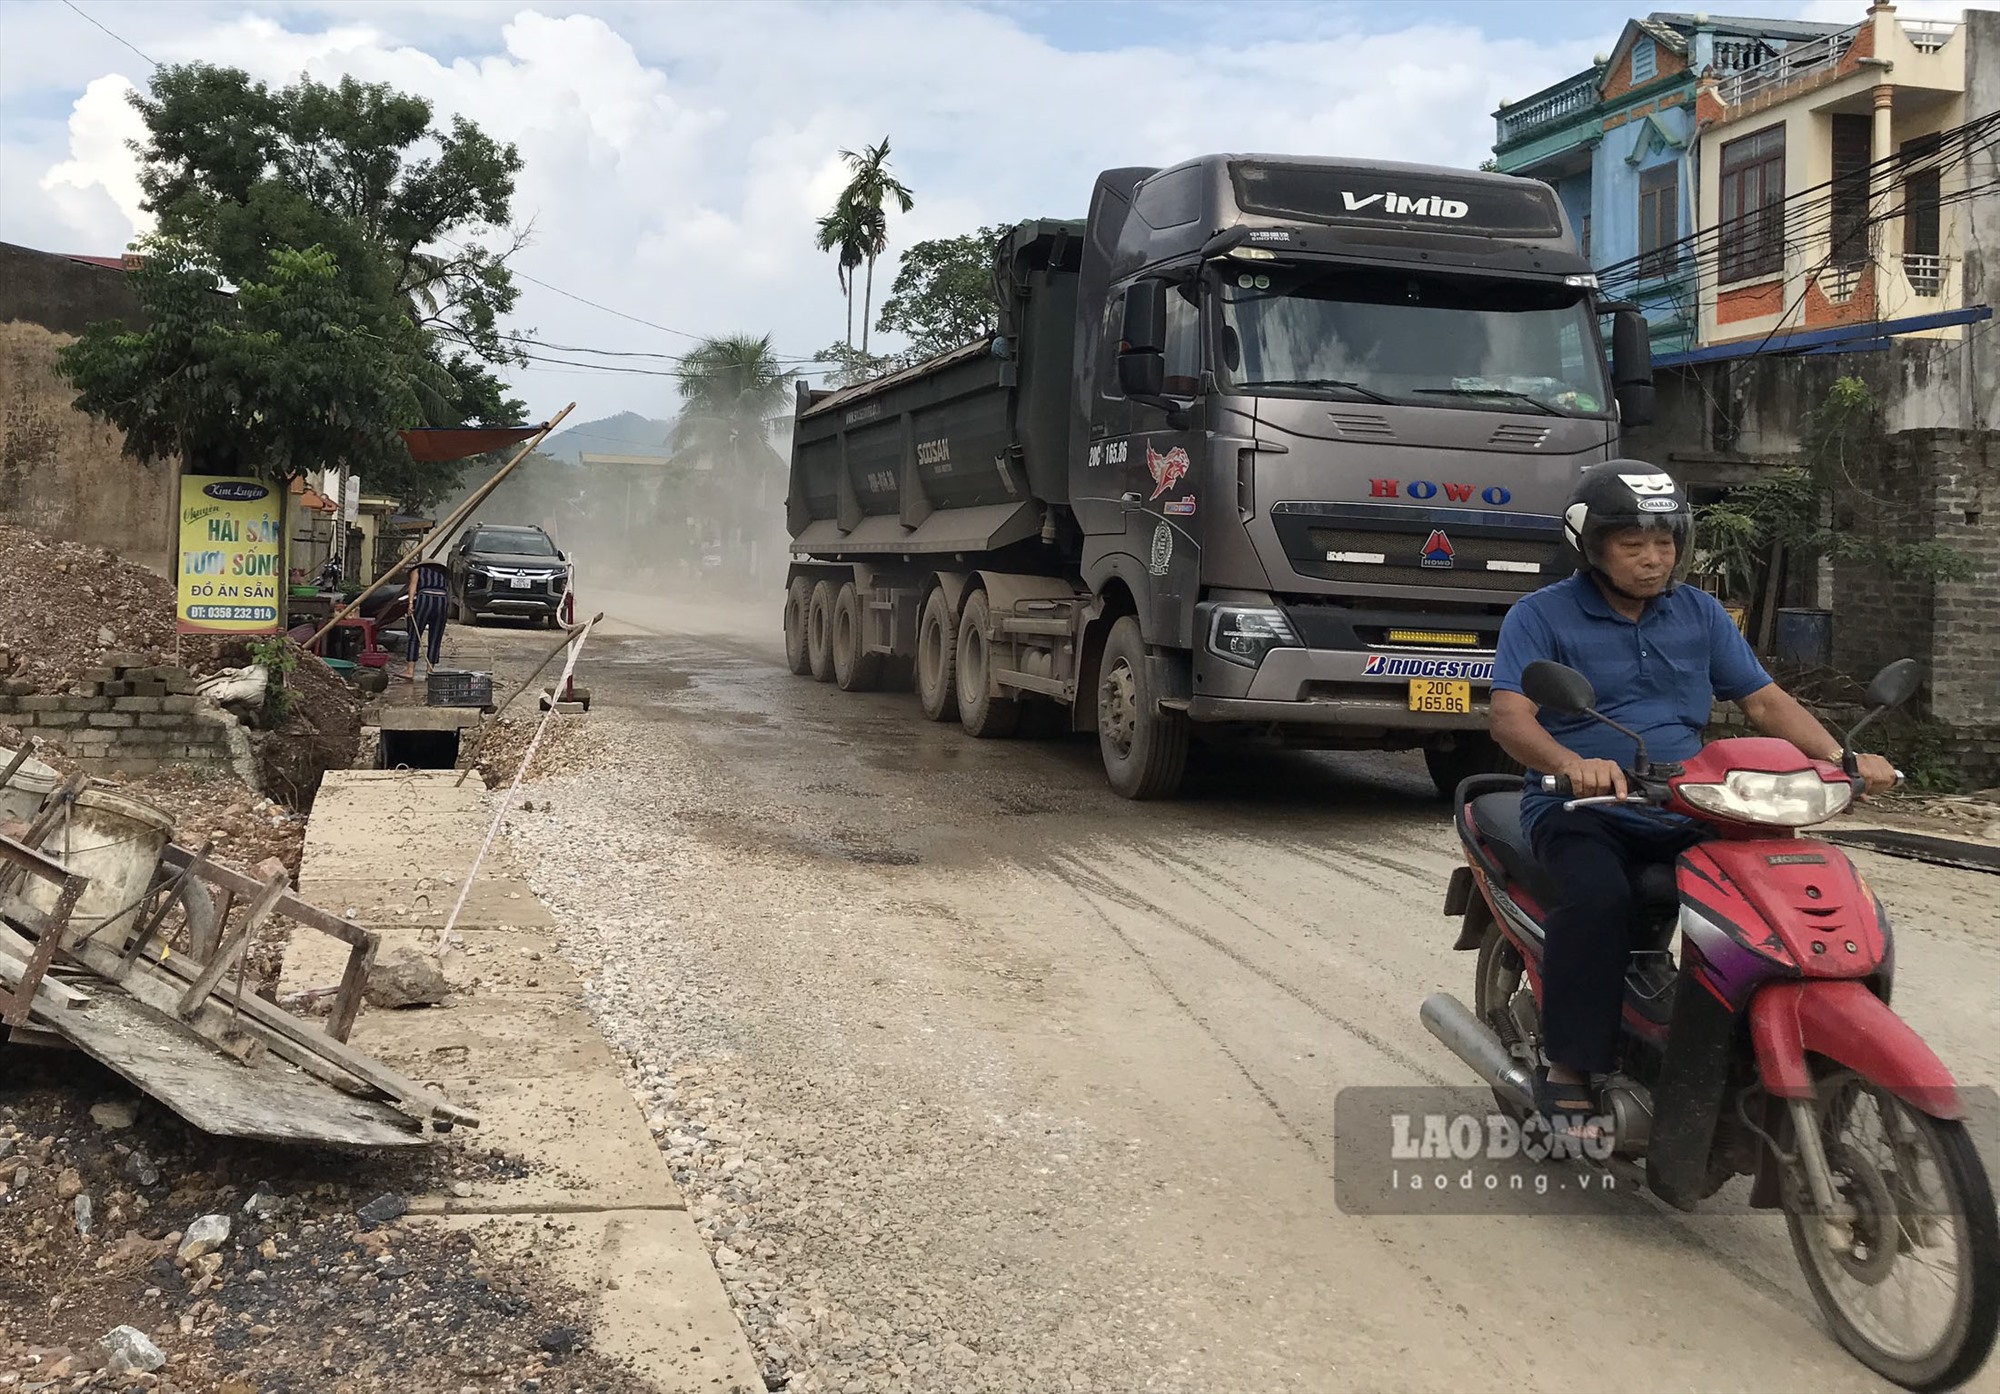 Đoạn đường liên xóm thuộc xã Linh Sơn bị xuống cấp nghiêm trọng do xe tải trọng lớn đi qua. Ảnh: Việt Bắc.